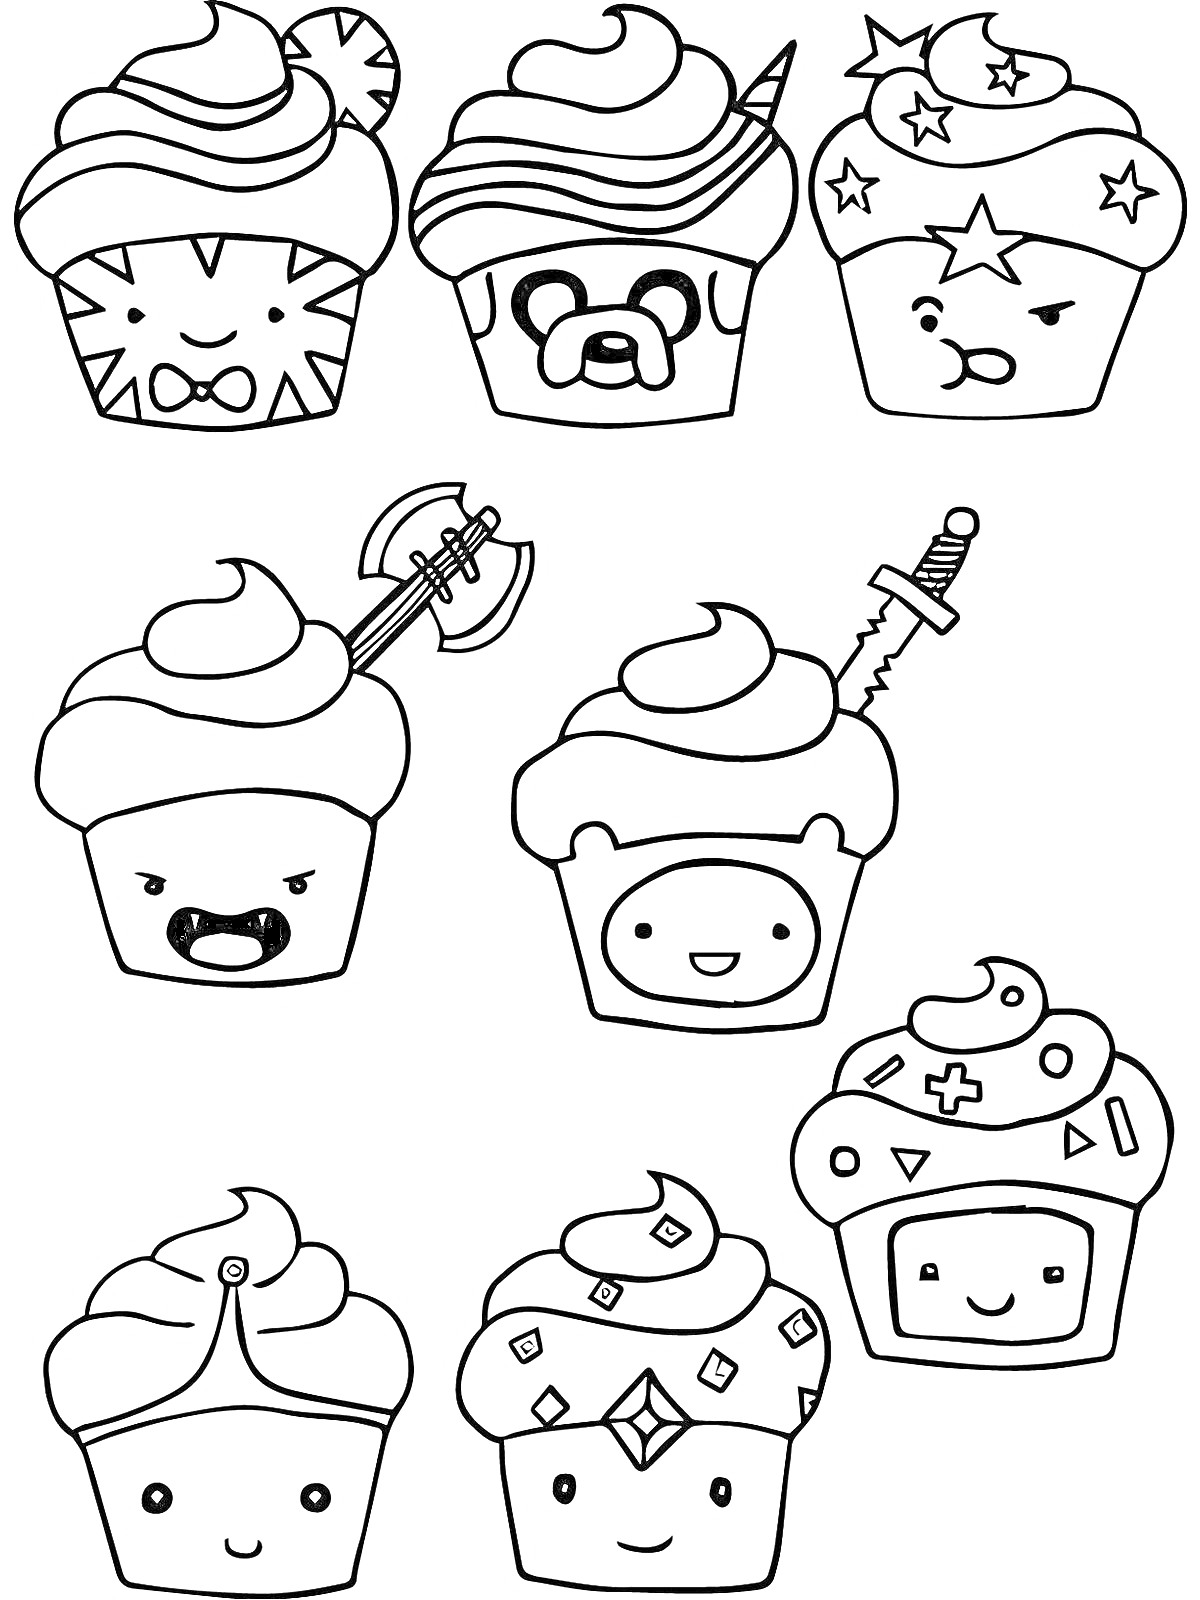 Раскраска Кексы с лицами и аксессуарами (леденец, звезды, топор, мечи, корона, украшения, игральные элементы)